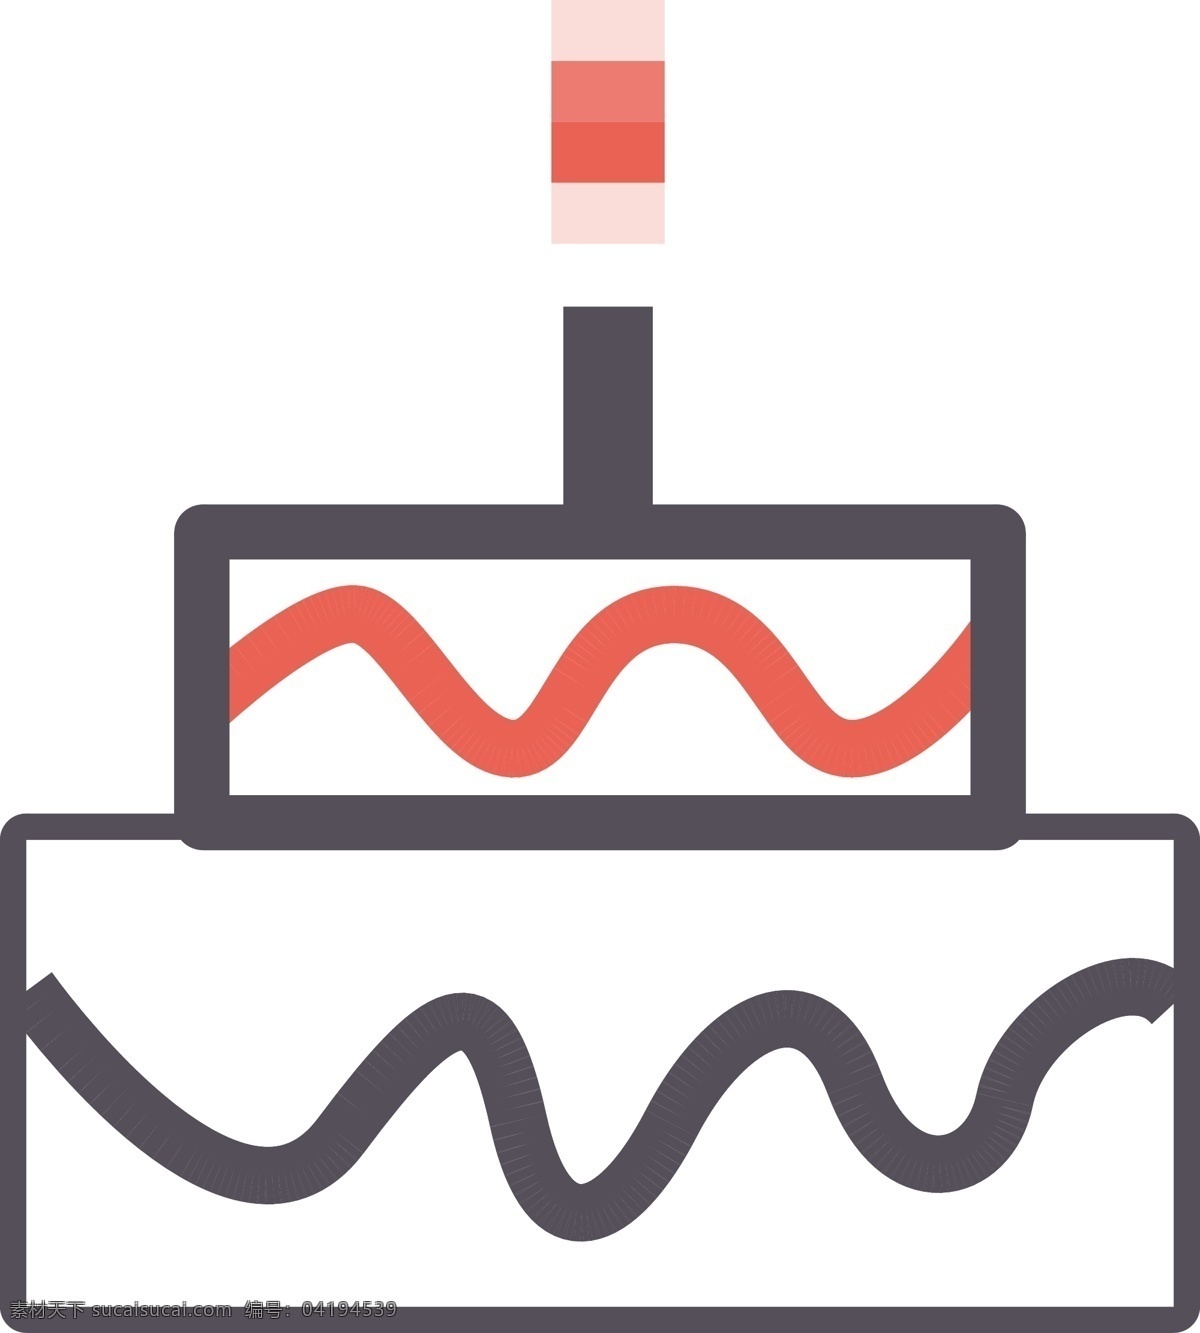 生日蛋糕 矢量图 生日 蛋糕 生日蛋糕矢量 矢量图标 移动界面设计 图标设计